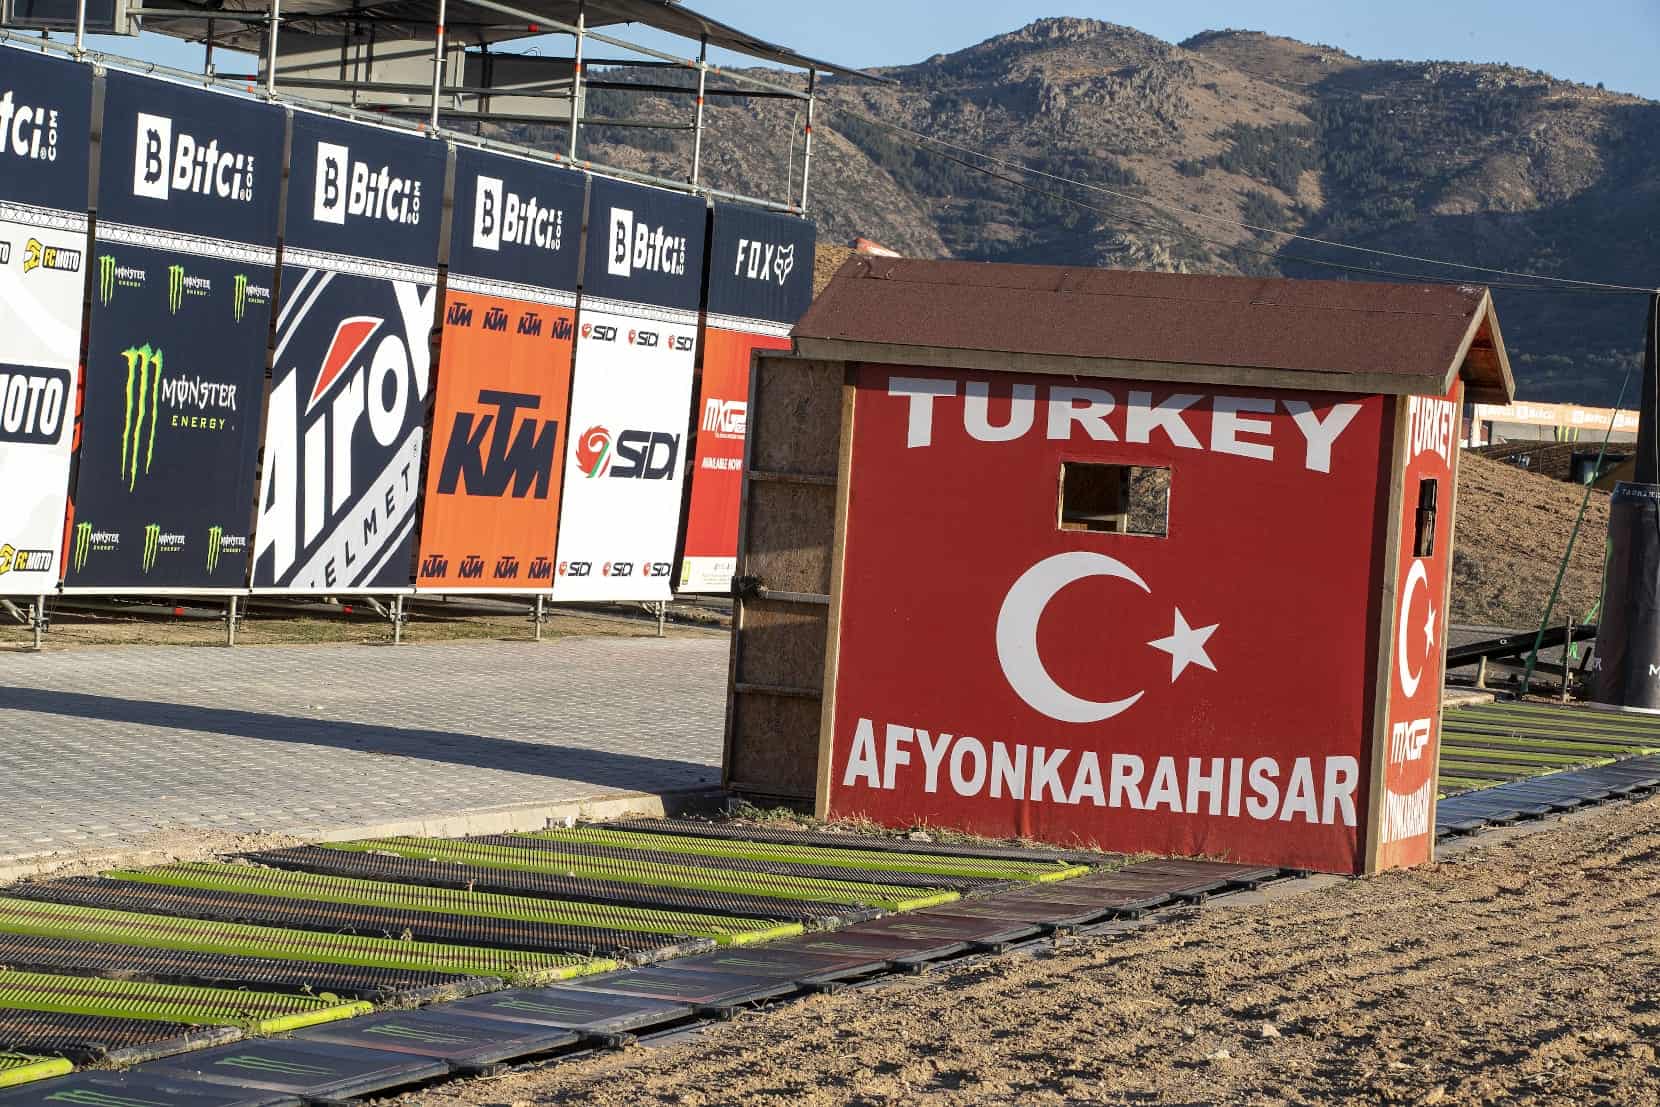 Teil 2 des WM-Gastspiels in der Türkei